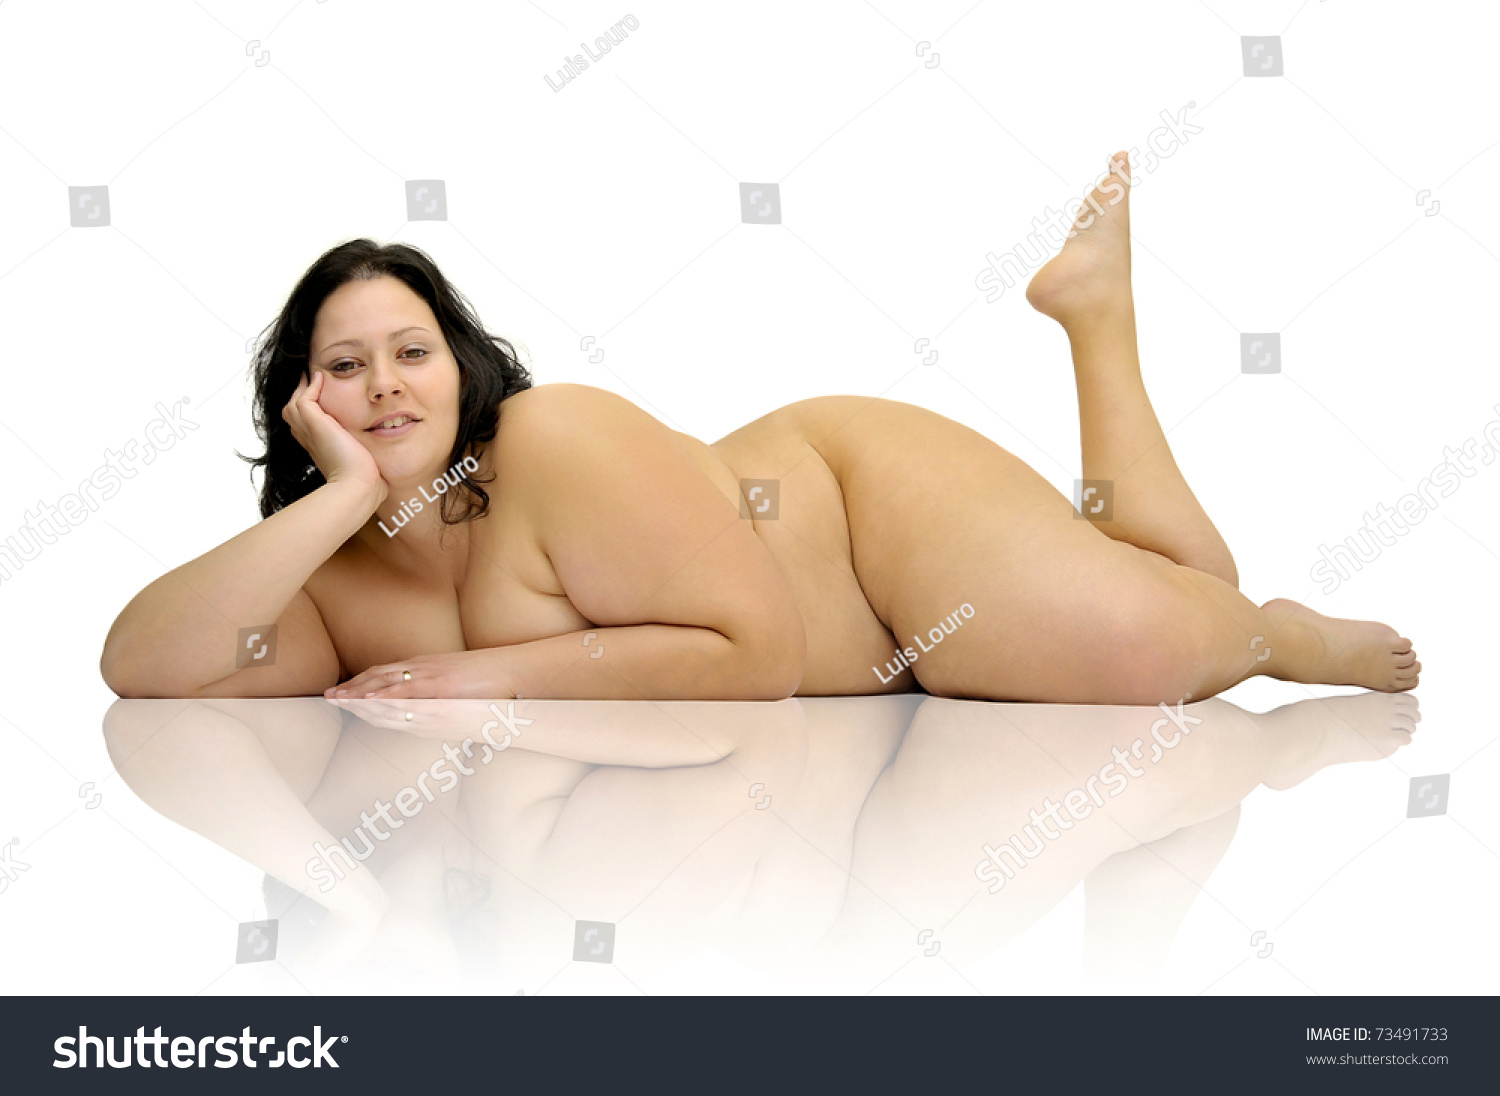 guju naked girl porn